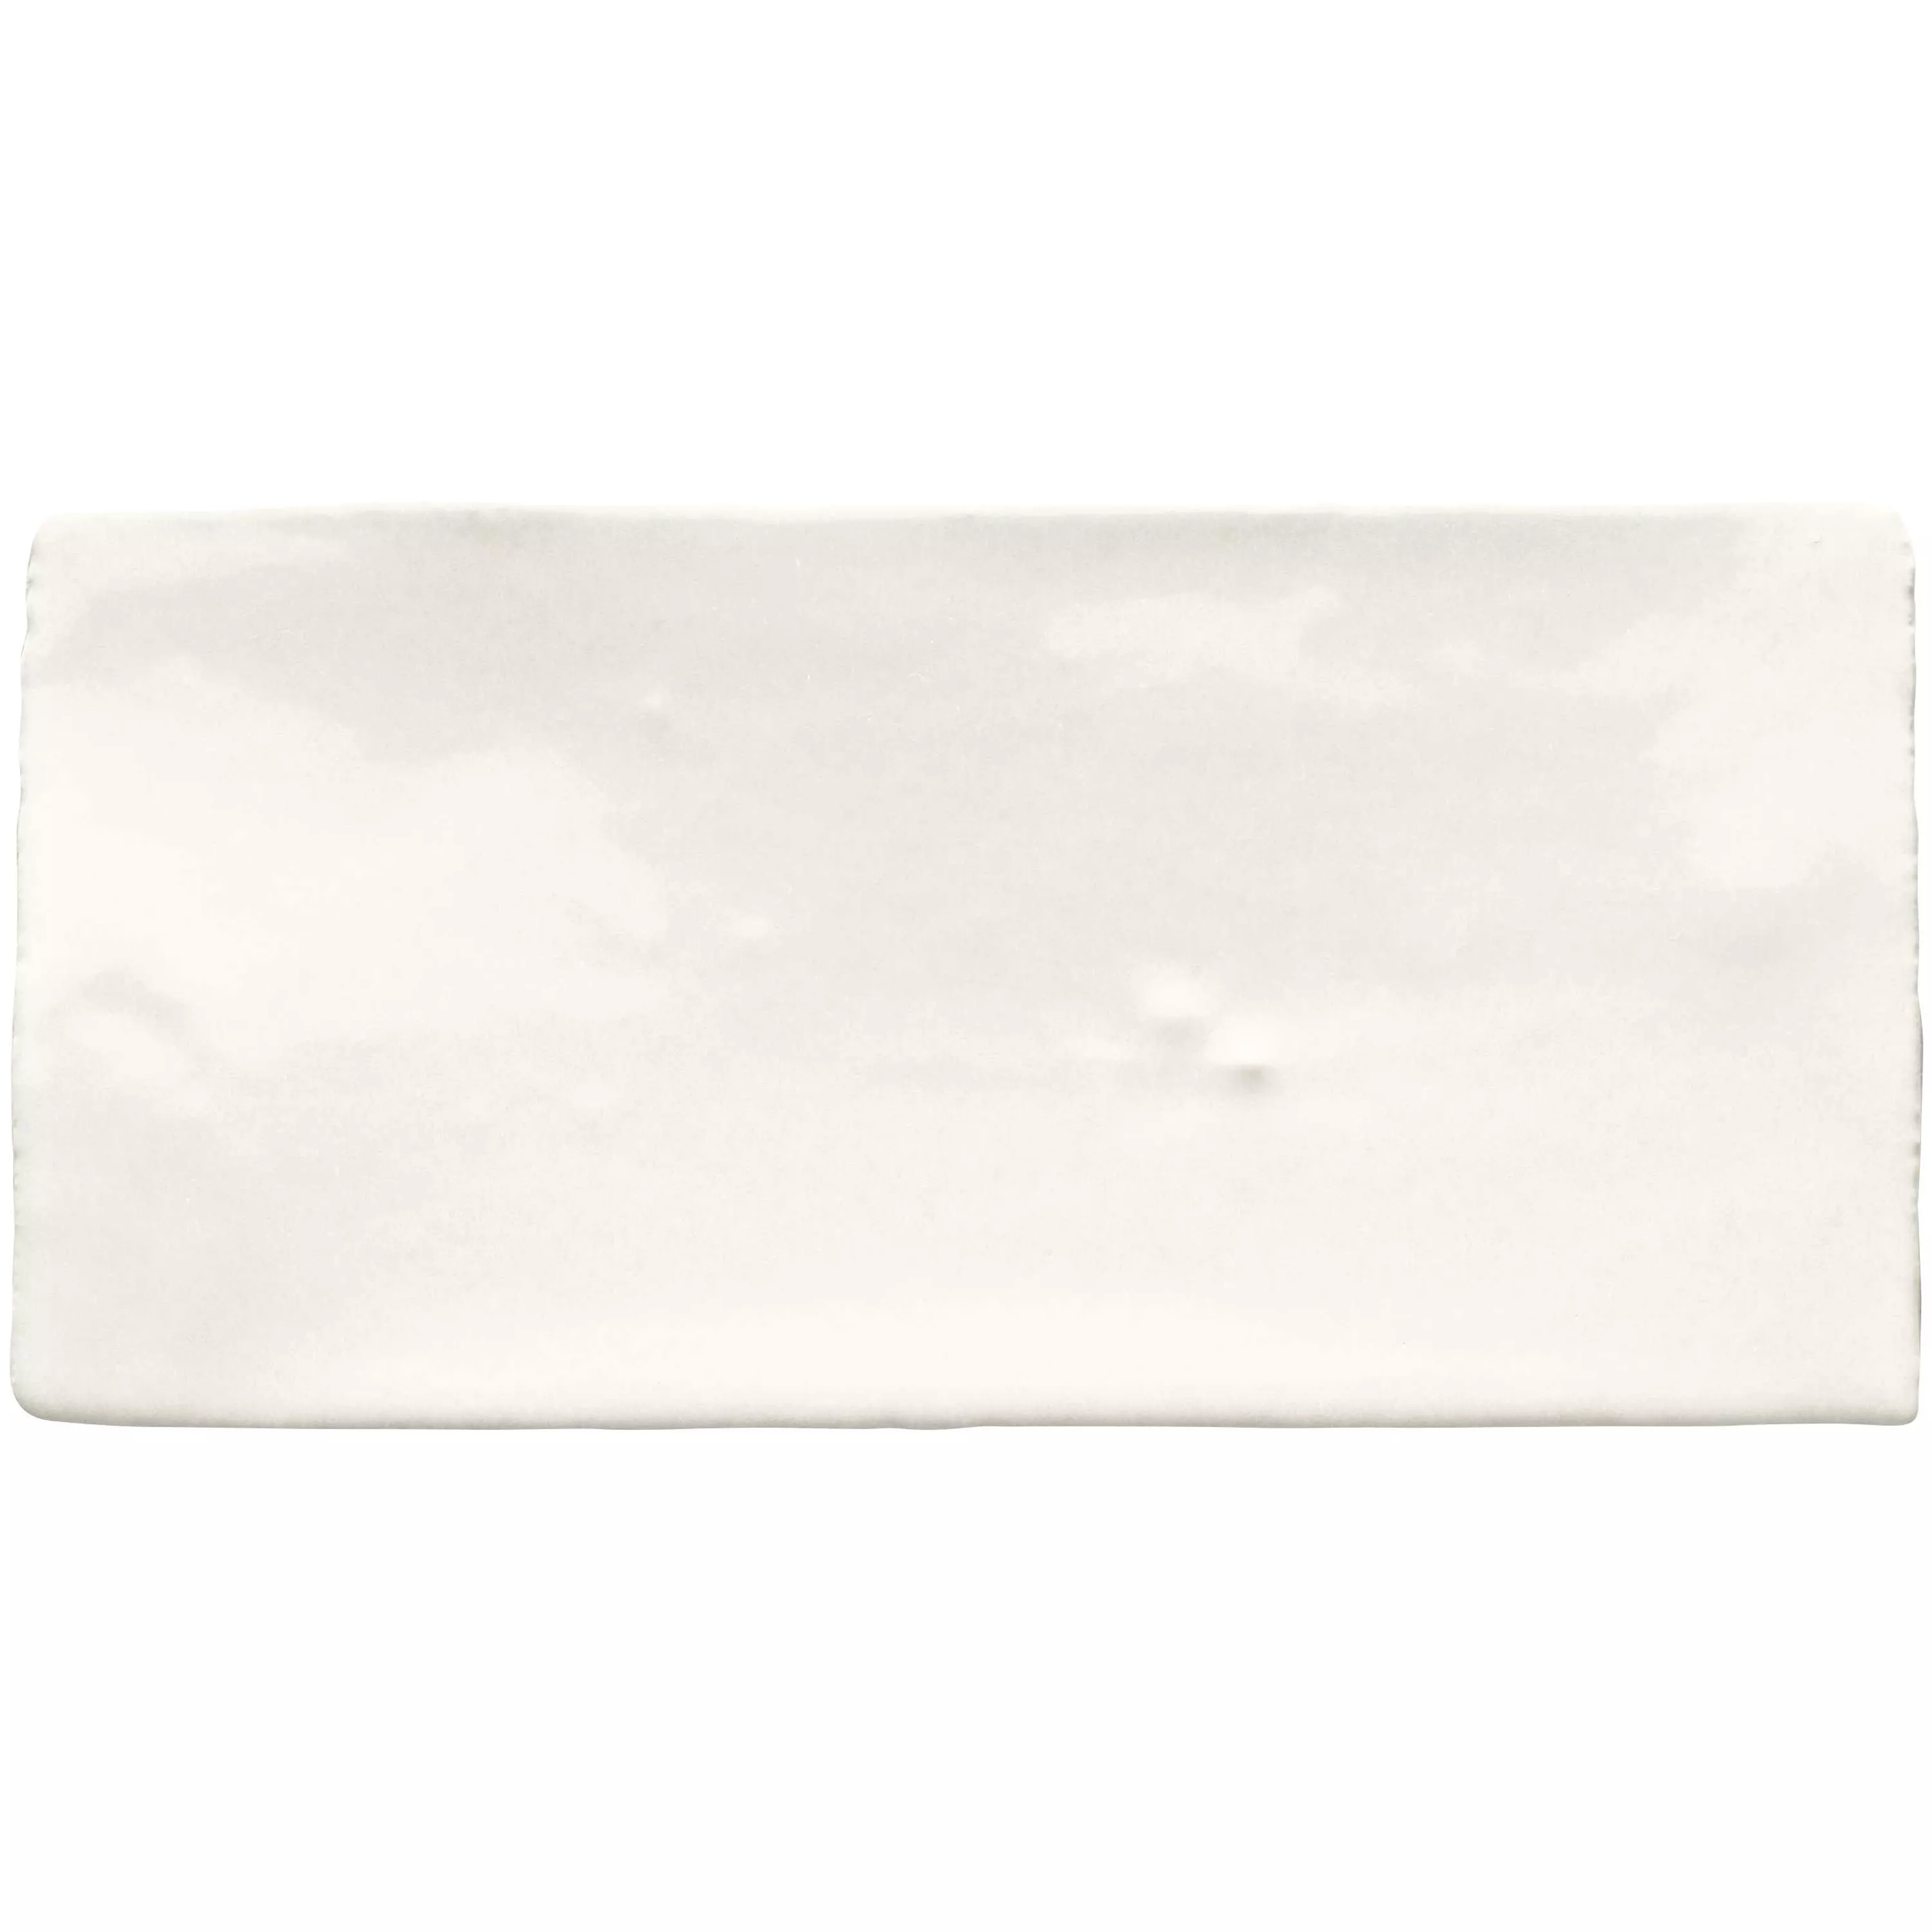 Próbka Płytki Ścienne Algier Wykonane Ręcznie 7,5x15cm Biały